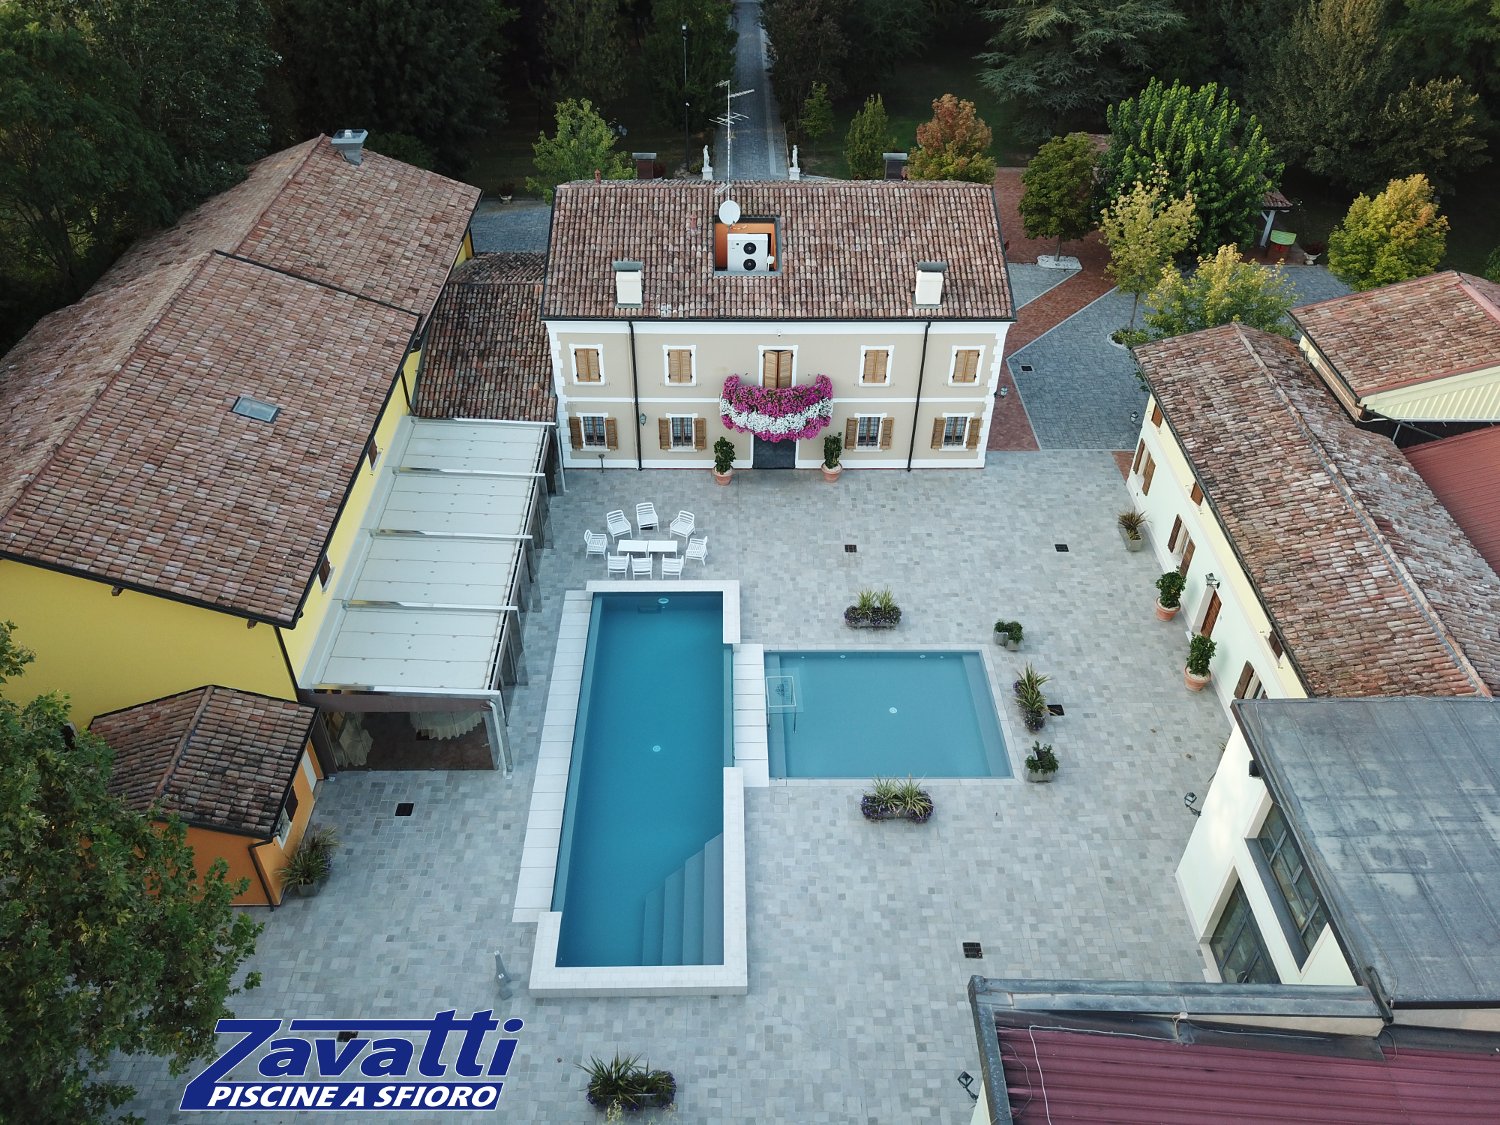 Antica villa con piscina; tutto caratterizzato dal sofisticato desing italiano